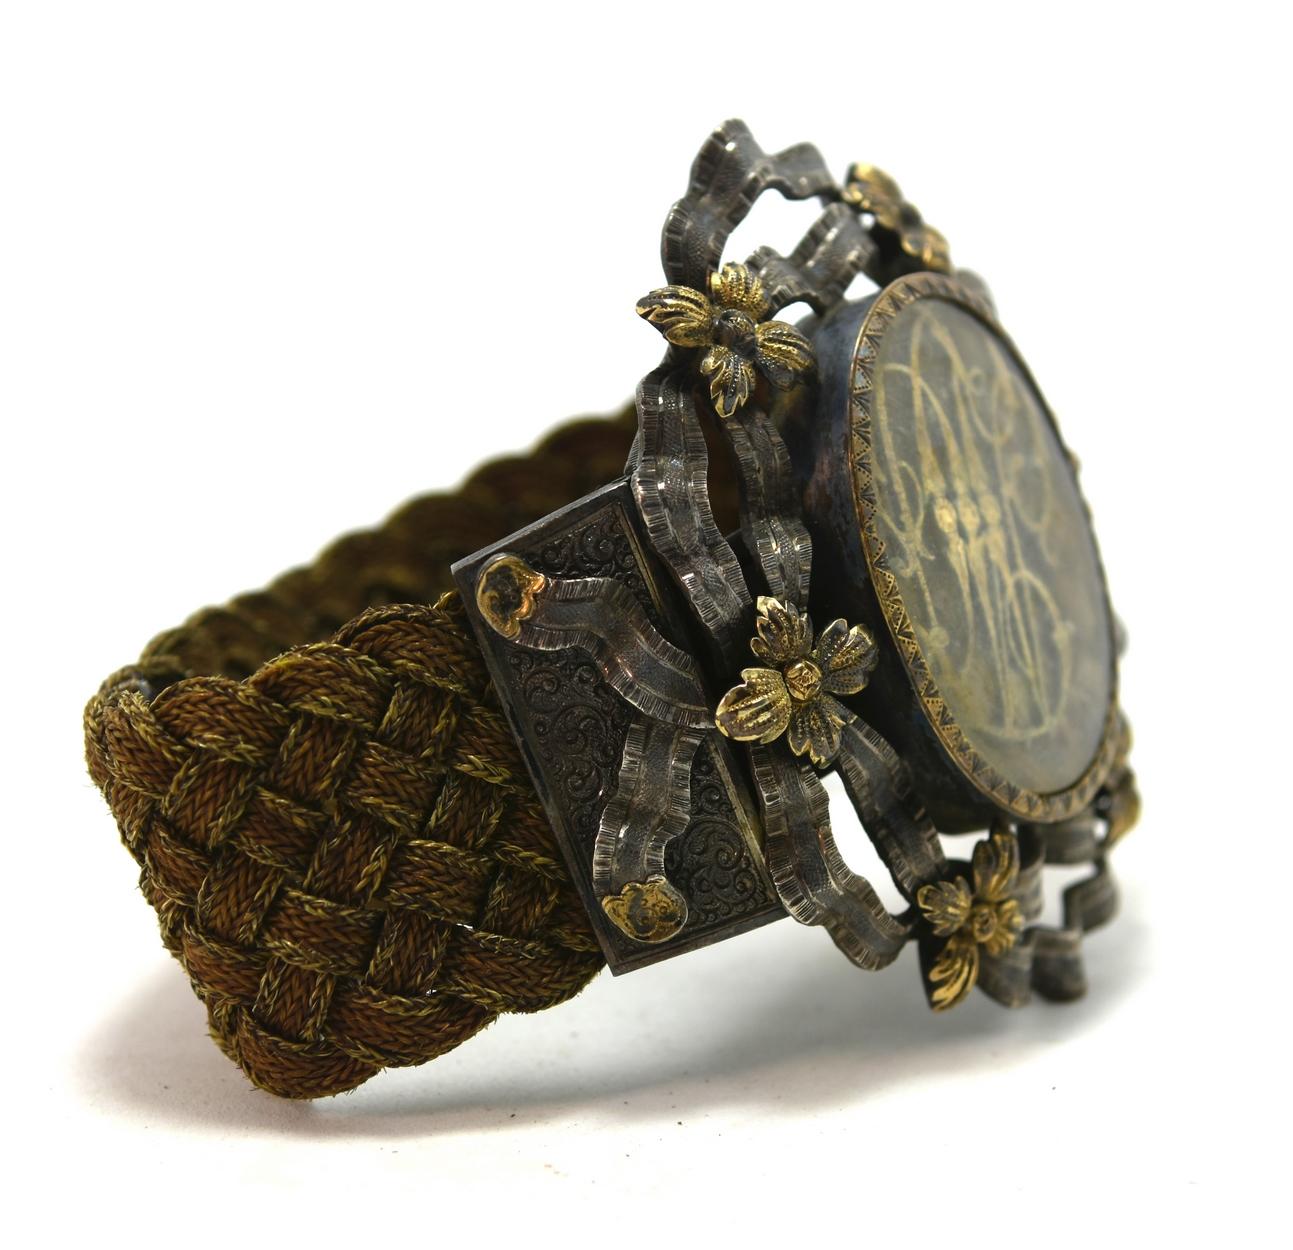 silber- und Vermeil-Armband aus dem 19. Jahrhundert mit goldenen Initialen, verziert mit goldenen Blumen und Bändern. Geflochtenes Haararmband.